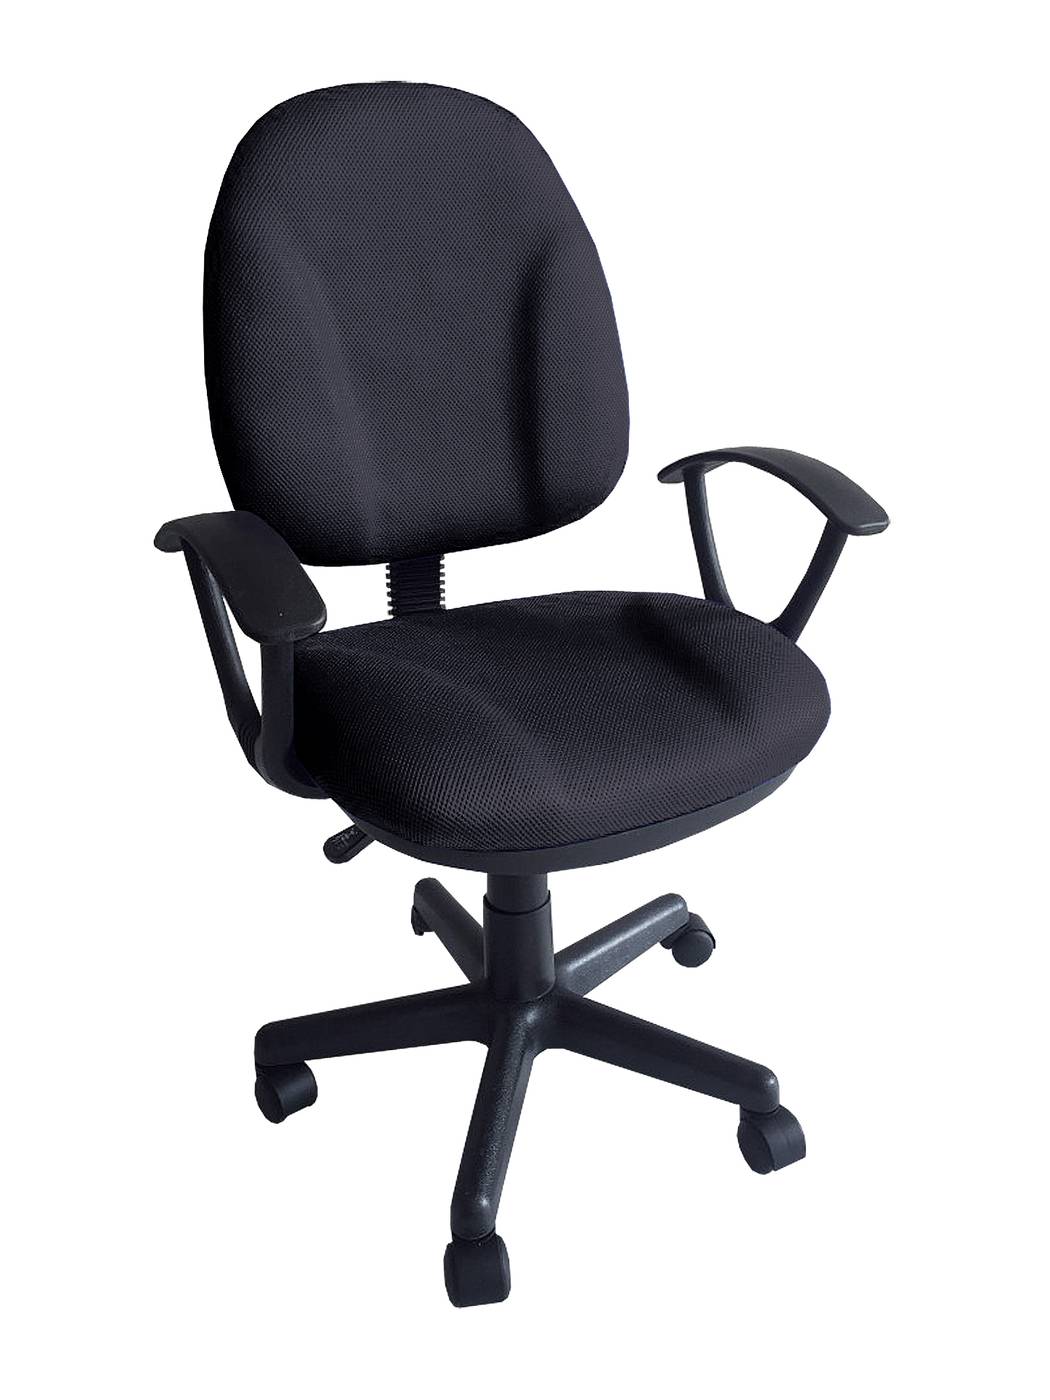 Silla giratoria para escritorio, con ruedas, elevable, con asiento y respaldo tapizado con tejido 3D color negro